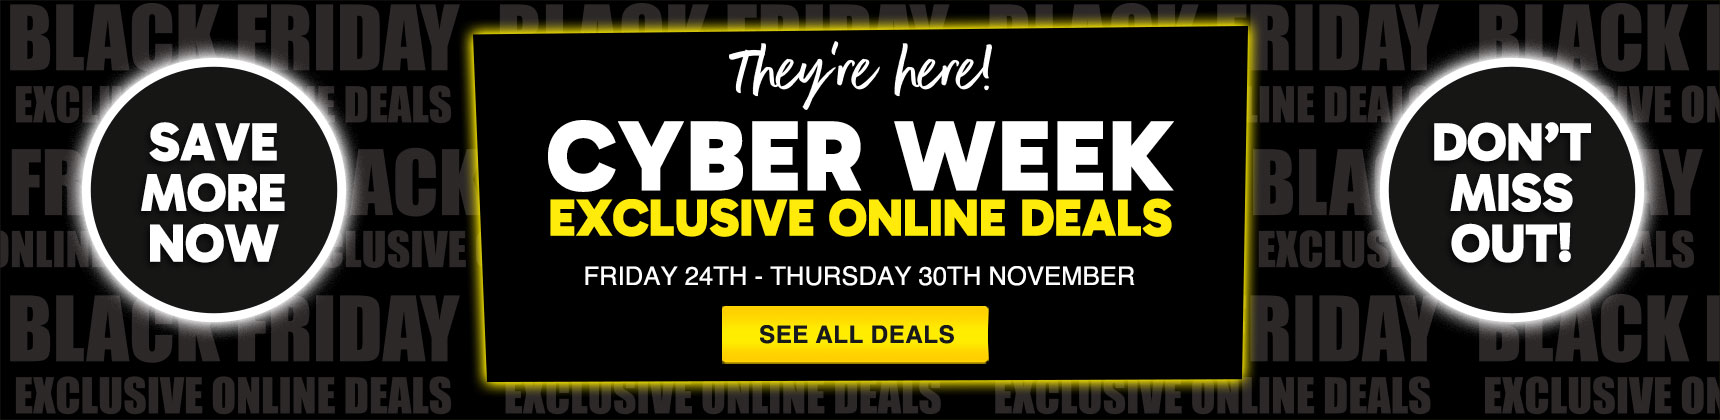 Cyber Week exclusive online deals